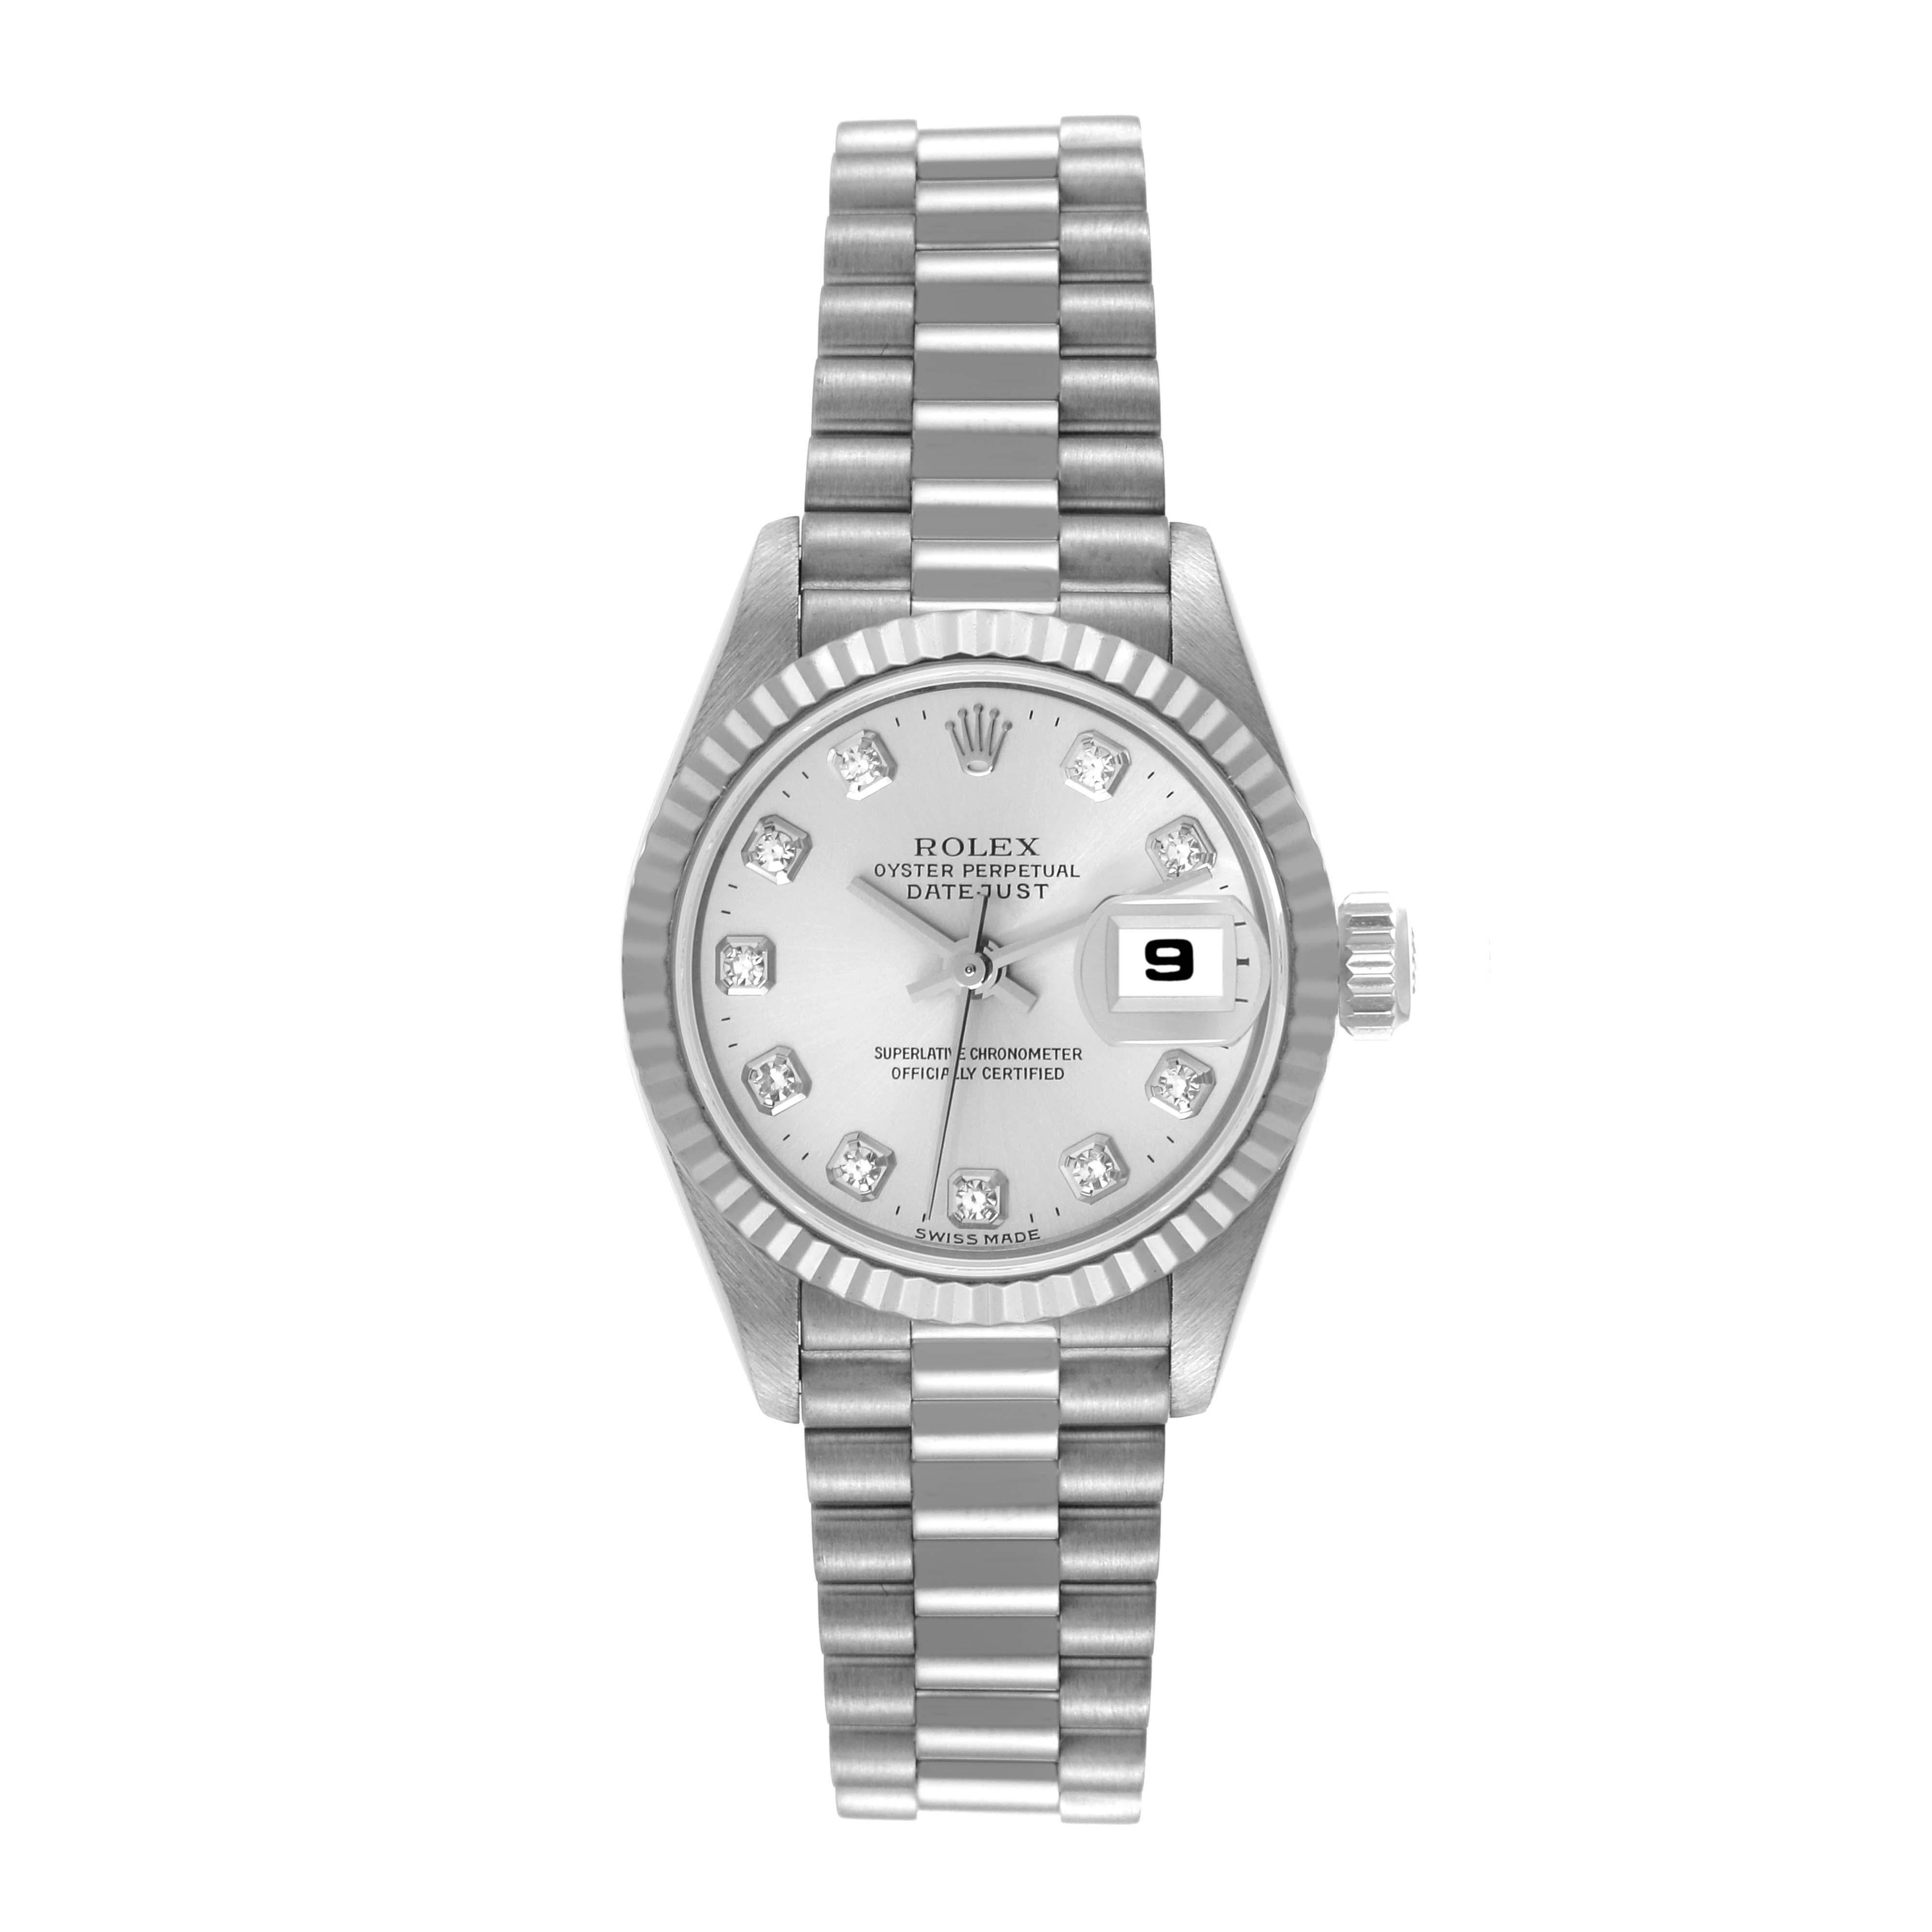 Rolex President Datejust 26 White Gold Diamond Dial Ladies Watch 69179. Mouvement à remontage automatique officiellement certifié chronomètre. Boîtier en or blanc 18 carats de 26,0 mm de diamètre. Logo Rolex sur une couronne. Lunette cannelée en or